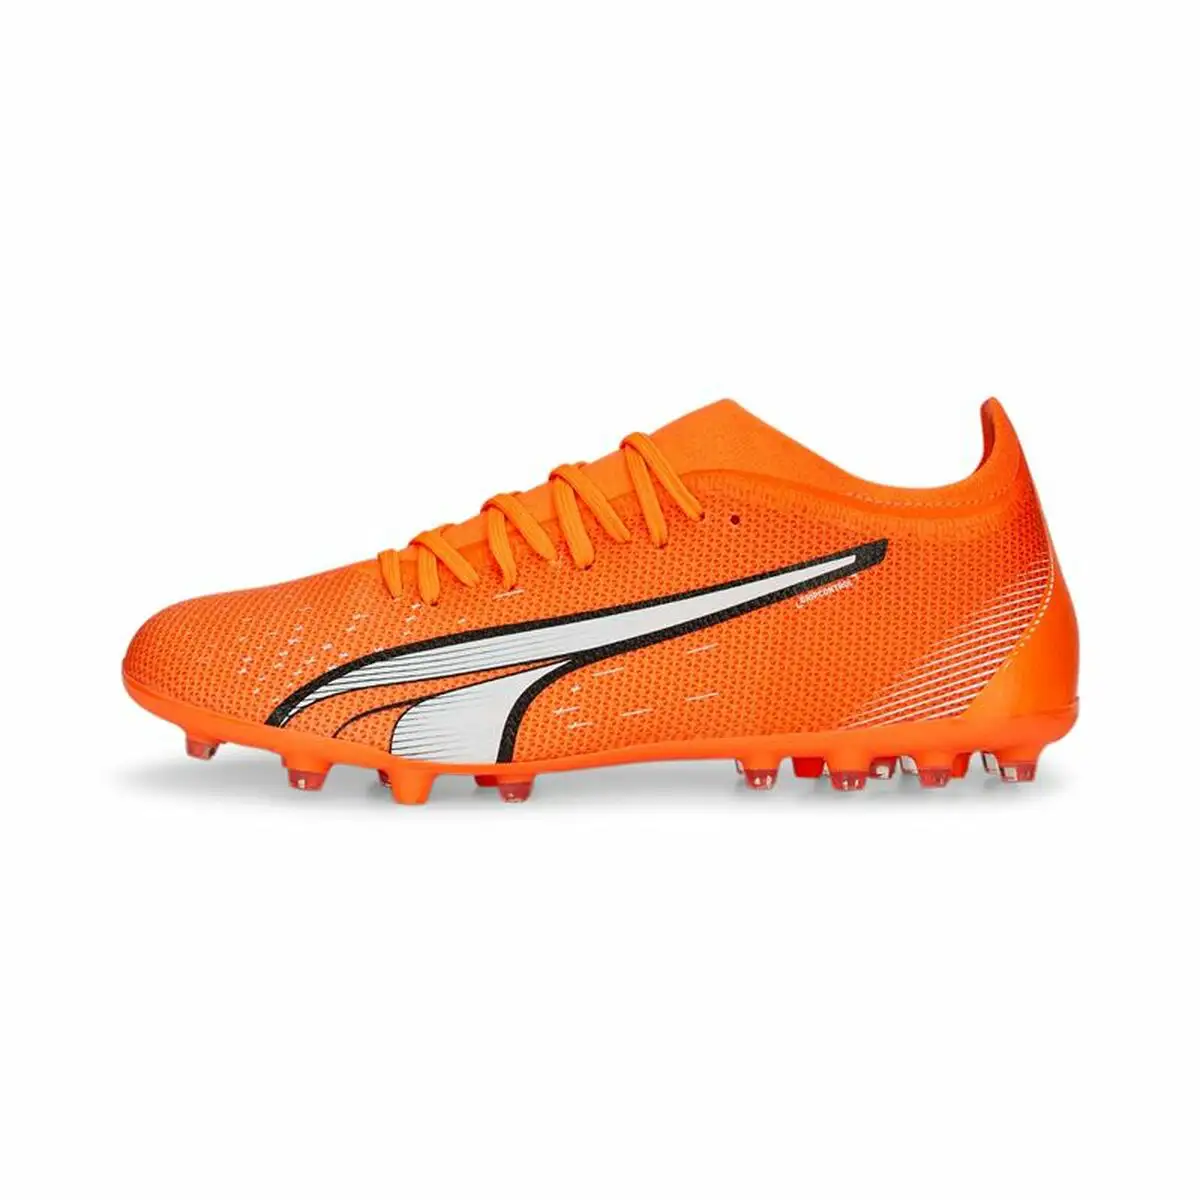 Chaussures de football pour adultes puma ultra match mg orange unisexe_9882. Bienvenue sur DIAYTAR SENEGAL - Où l'Authenticité Rencontre le Confort. Plongez dans notre univers de produits qui allient tradition et commodité pour répondre à vos besoins.